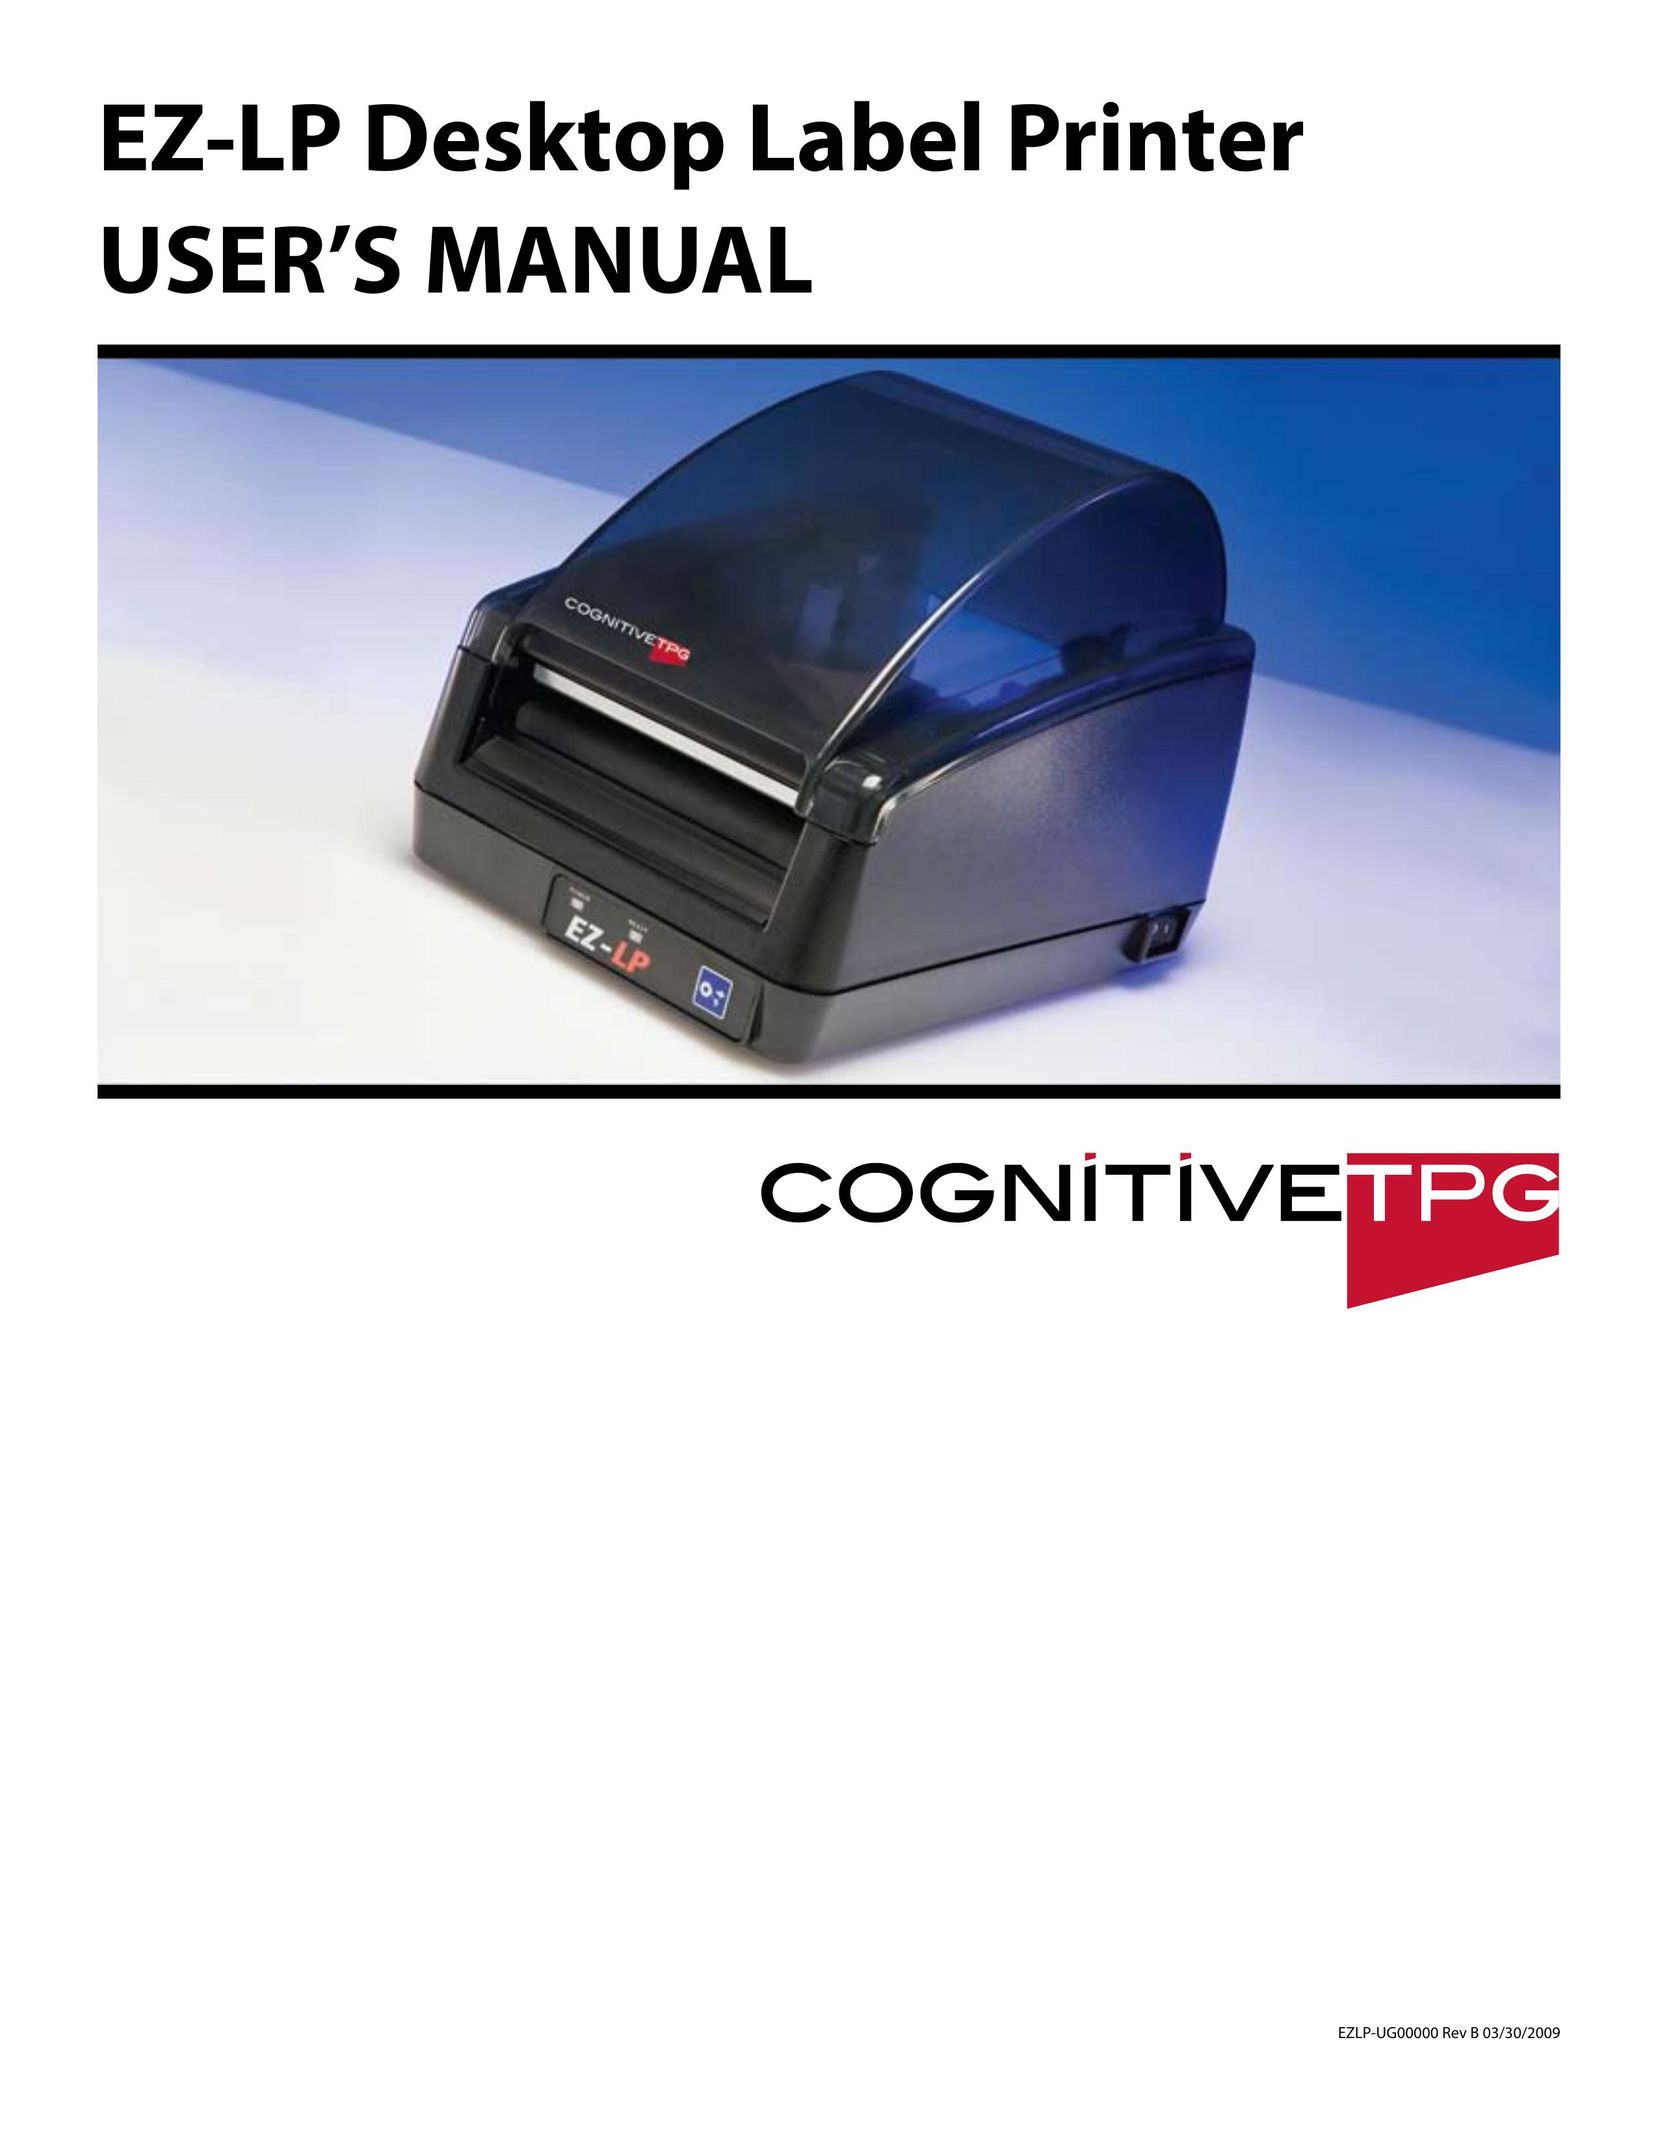 Cognitive Solutions EZLP-UG00000 Label Maker User Manual